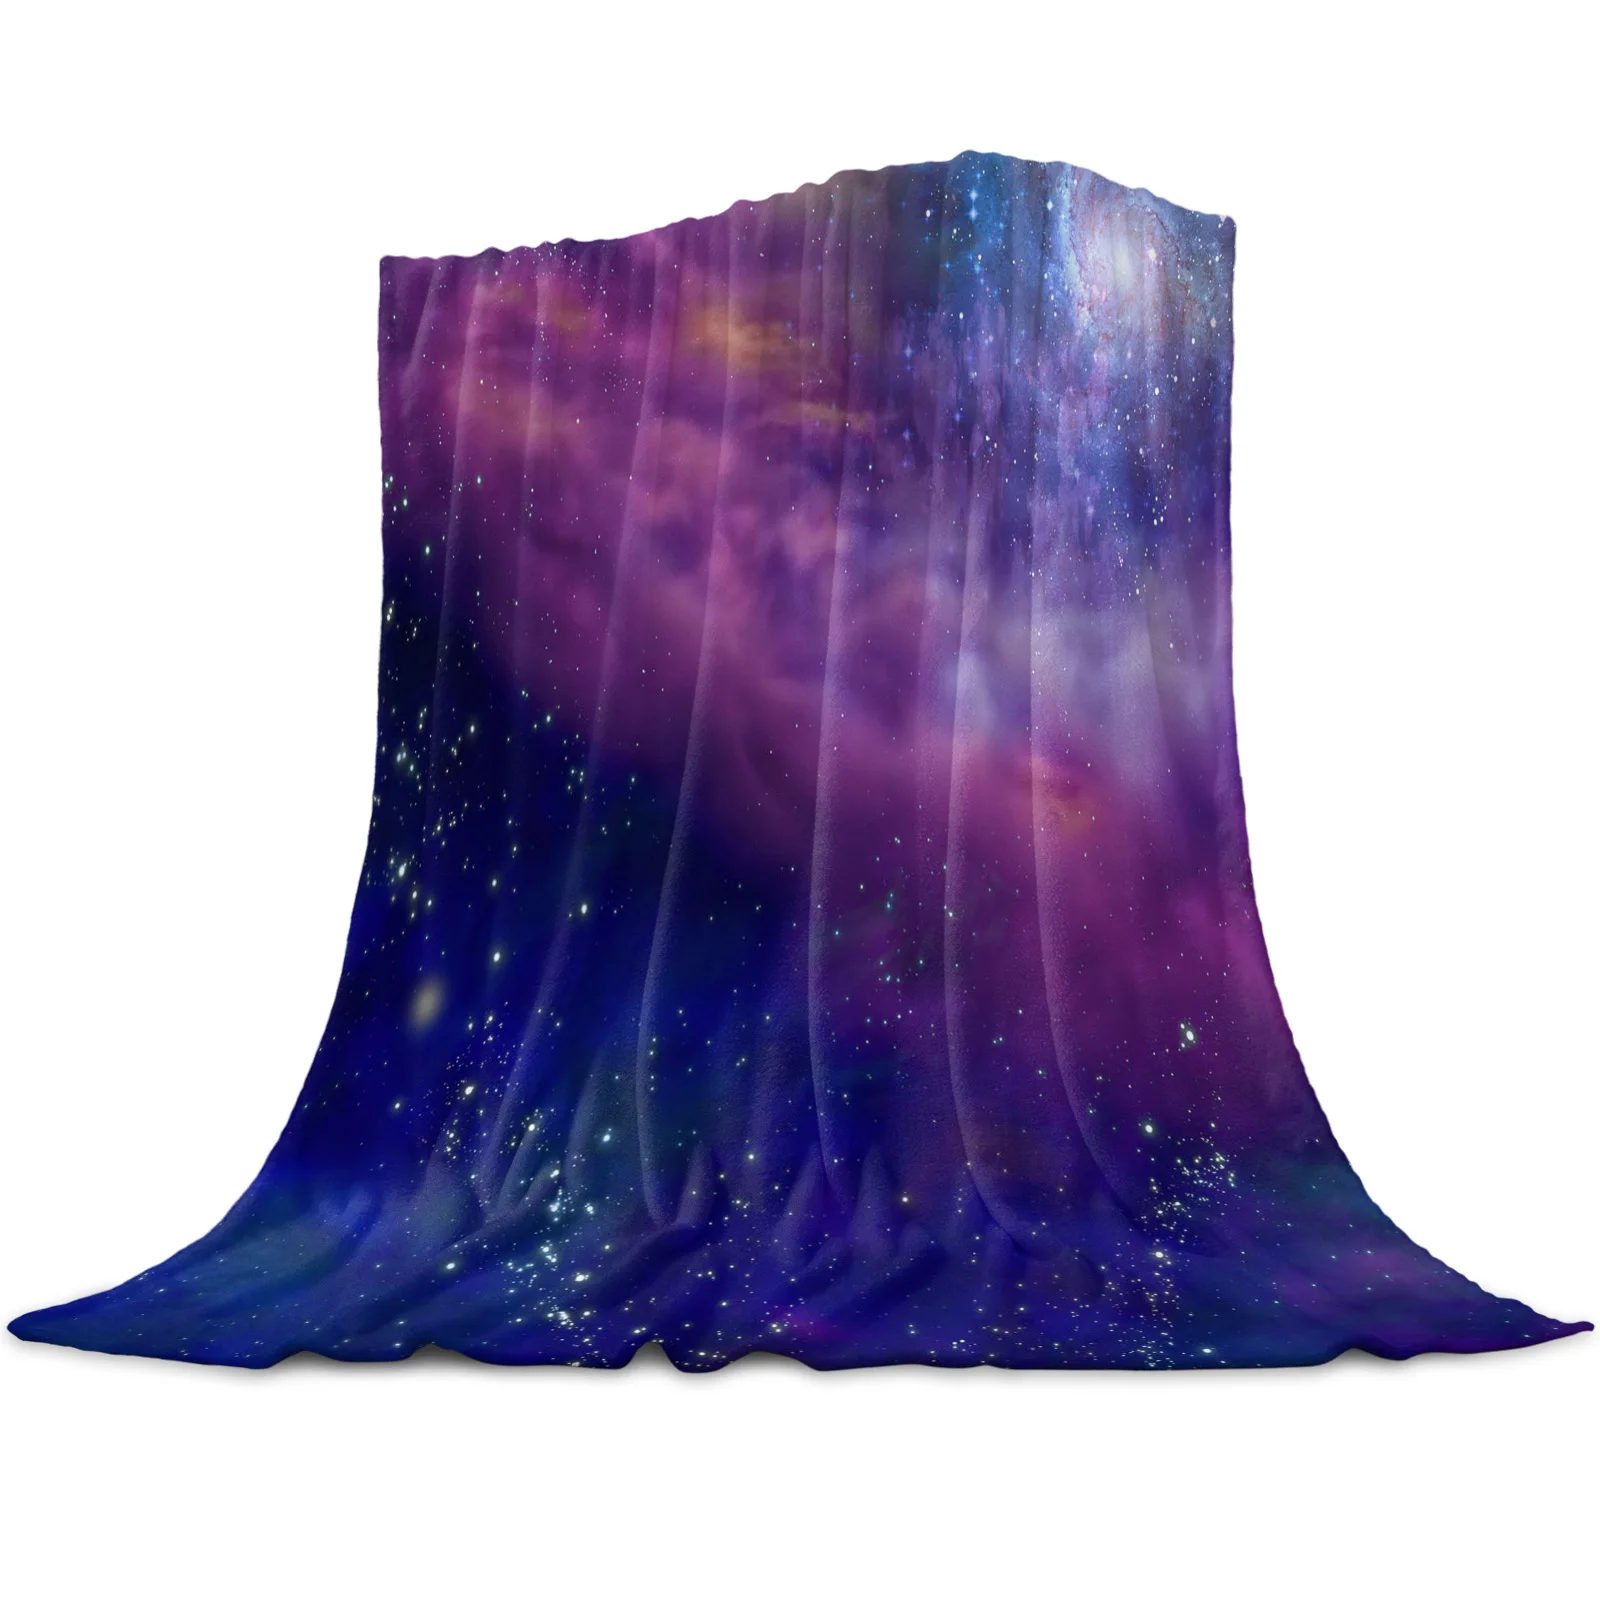 Галактика Плед Млечный Путь Плед Теплое Фланелевое Одеяло Декор Спальни Одеяла для Кровати King Queen Полноразмерные Супер Мягкие Изображение 1